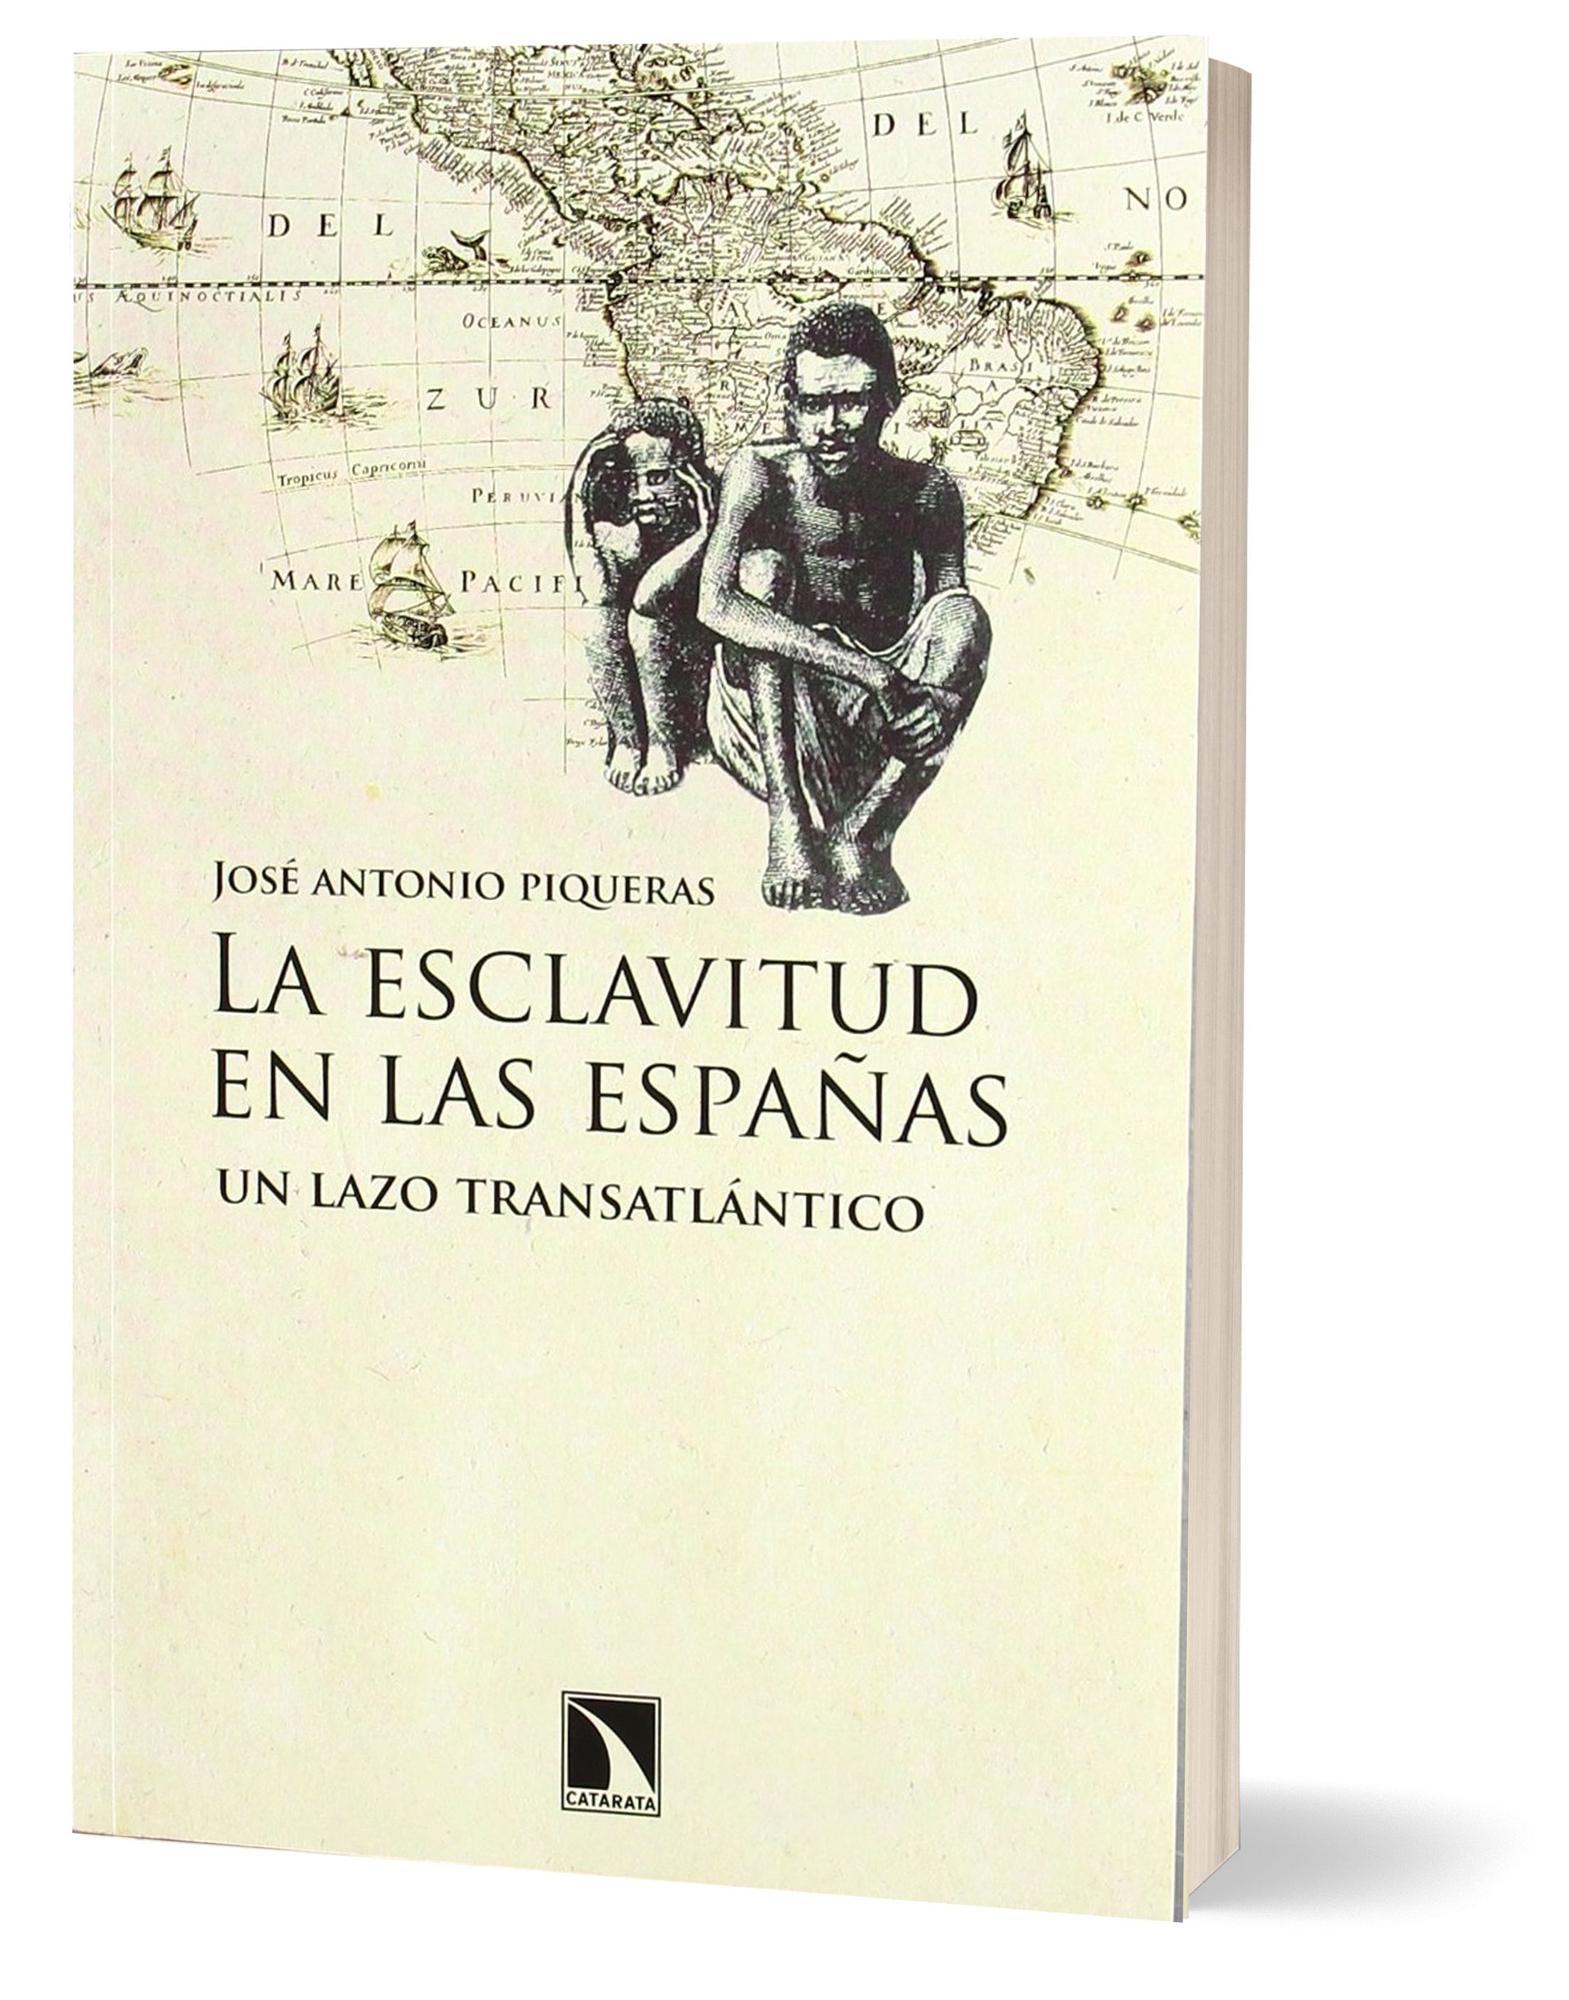 Portada del libro &quot;La esclavitud en las Españas&quot; de José Antonio Piqueras